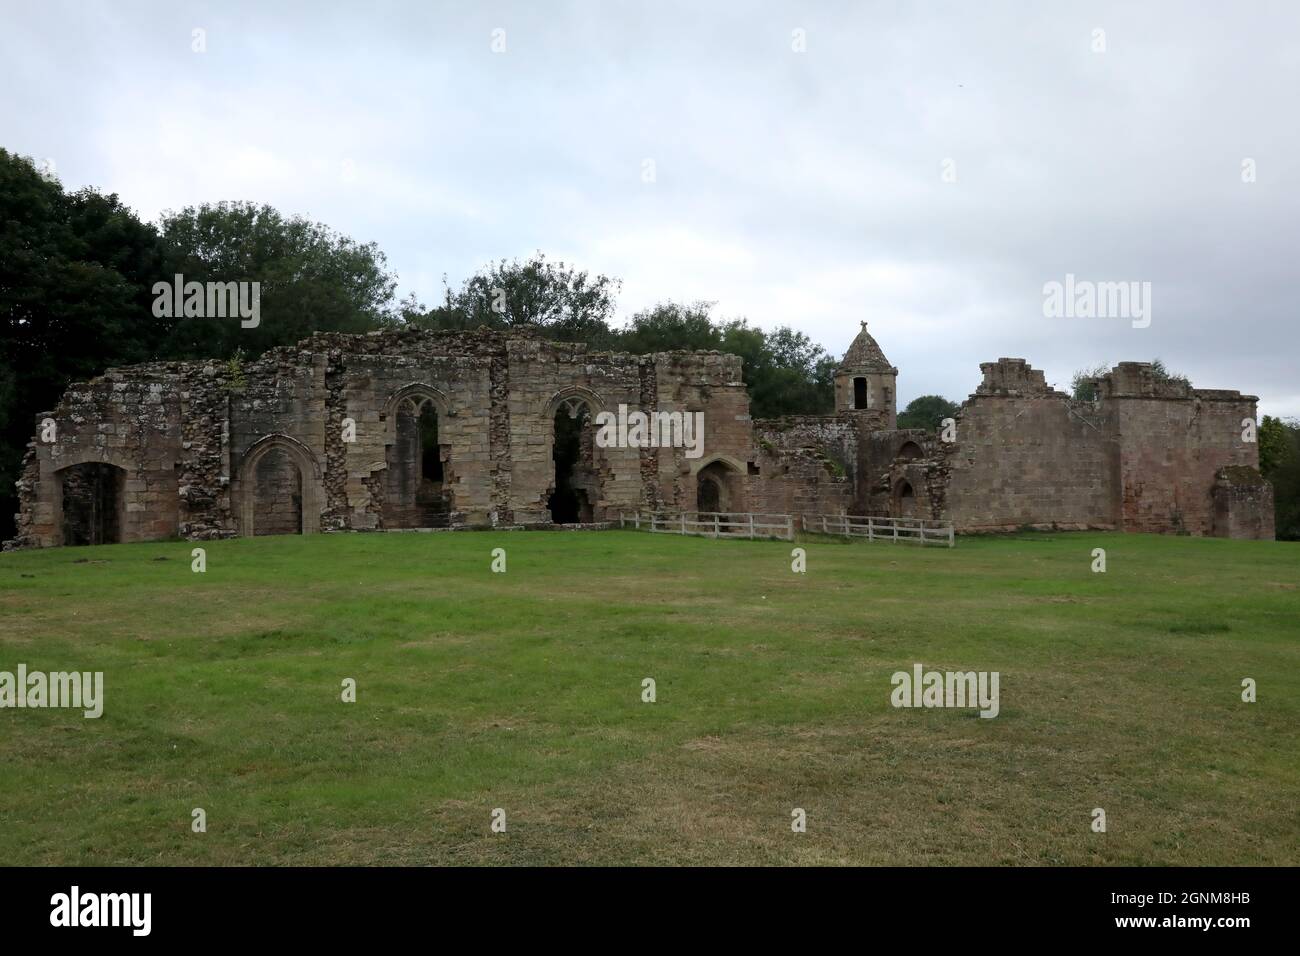 23 septembre 2021 : vue sur le château de Spofforth à Spofforth, dans le nord du Yorkshire, en Angleterre, où les barons rebelles ont reputé la Magna Carta en 1215 Banque D'Images